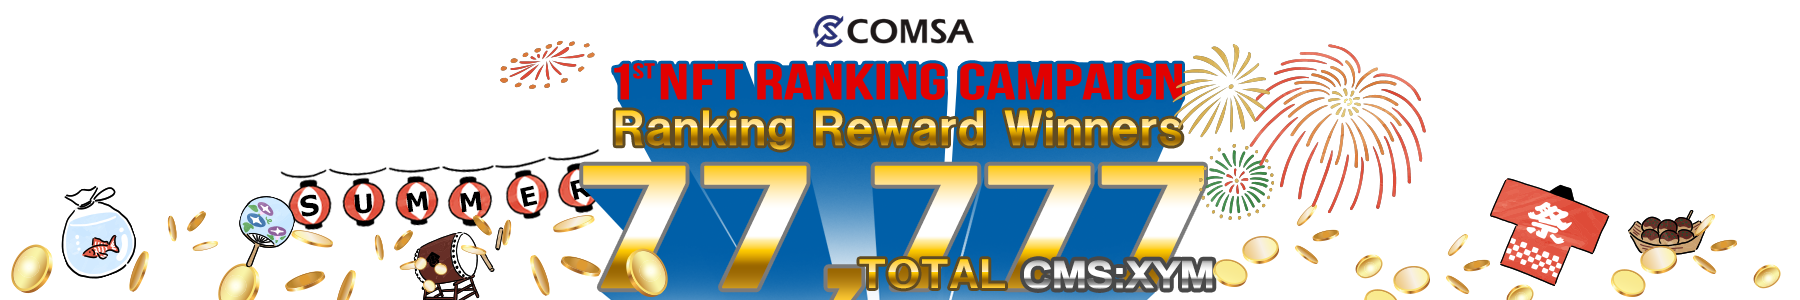 Ranking Reward Winners